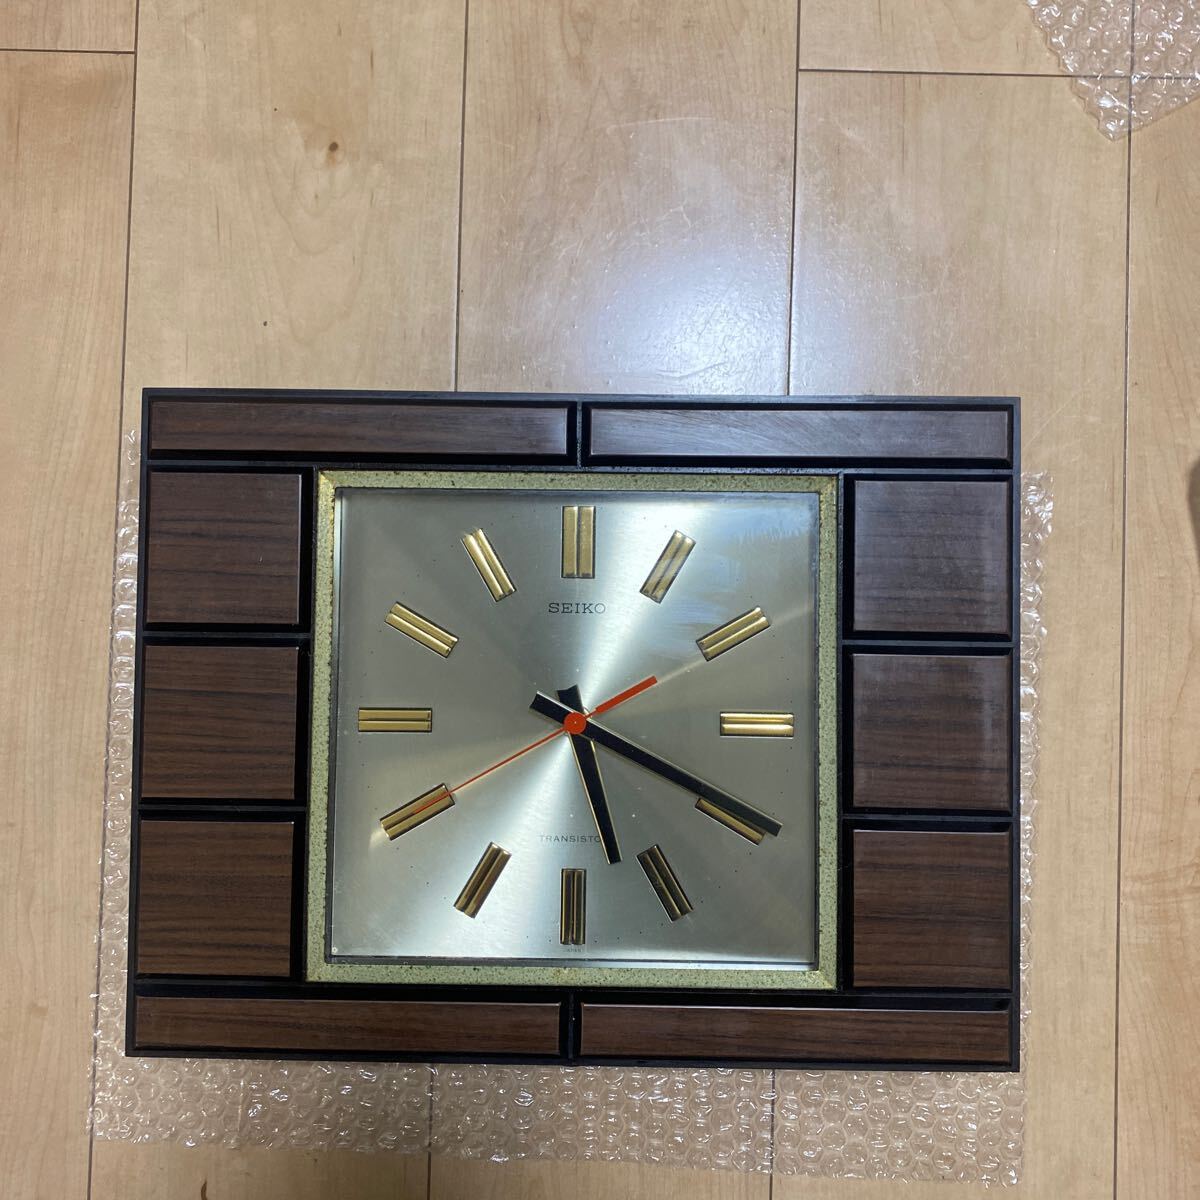 SEIKO 時計 掛け時計  セイコー TTX-814 昭和レトロ 36.5 x27.5の画像1